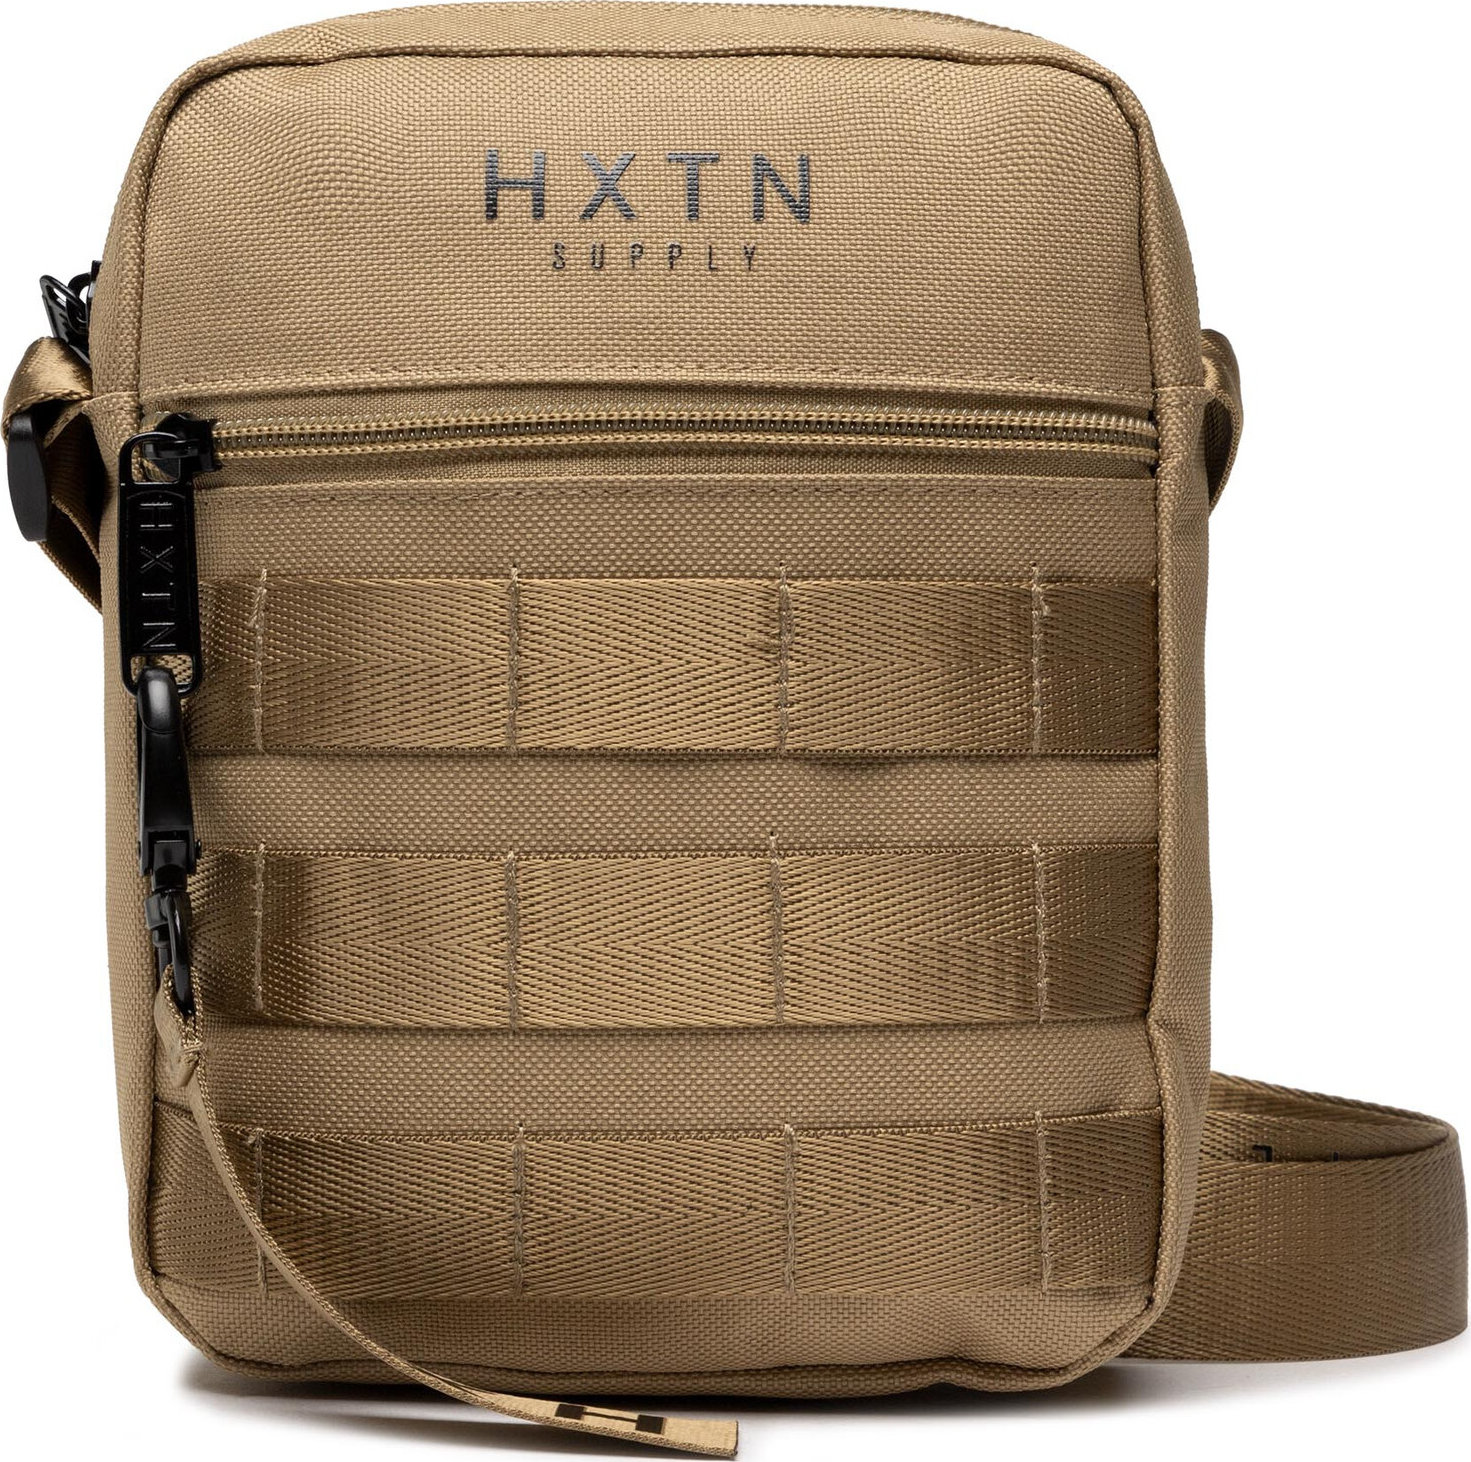 Ľadvinka HXTN Supply Urban Recoil Stash Bag H129012 Sand